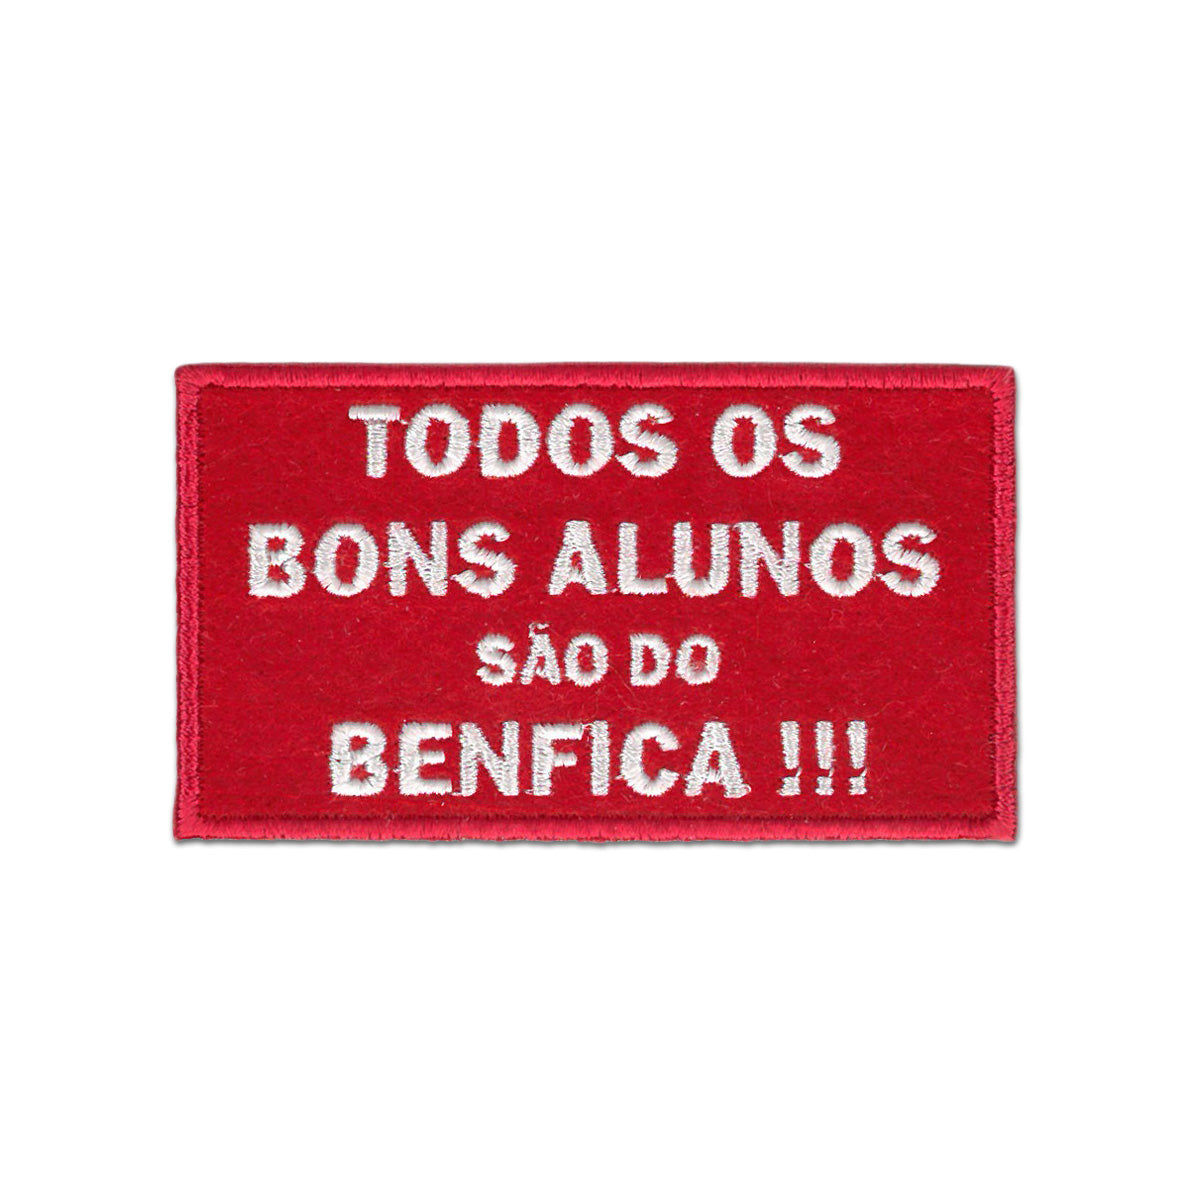 Todos os bons alunos são do Benfica!!!